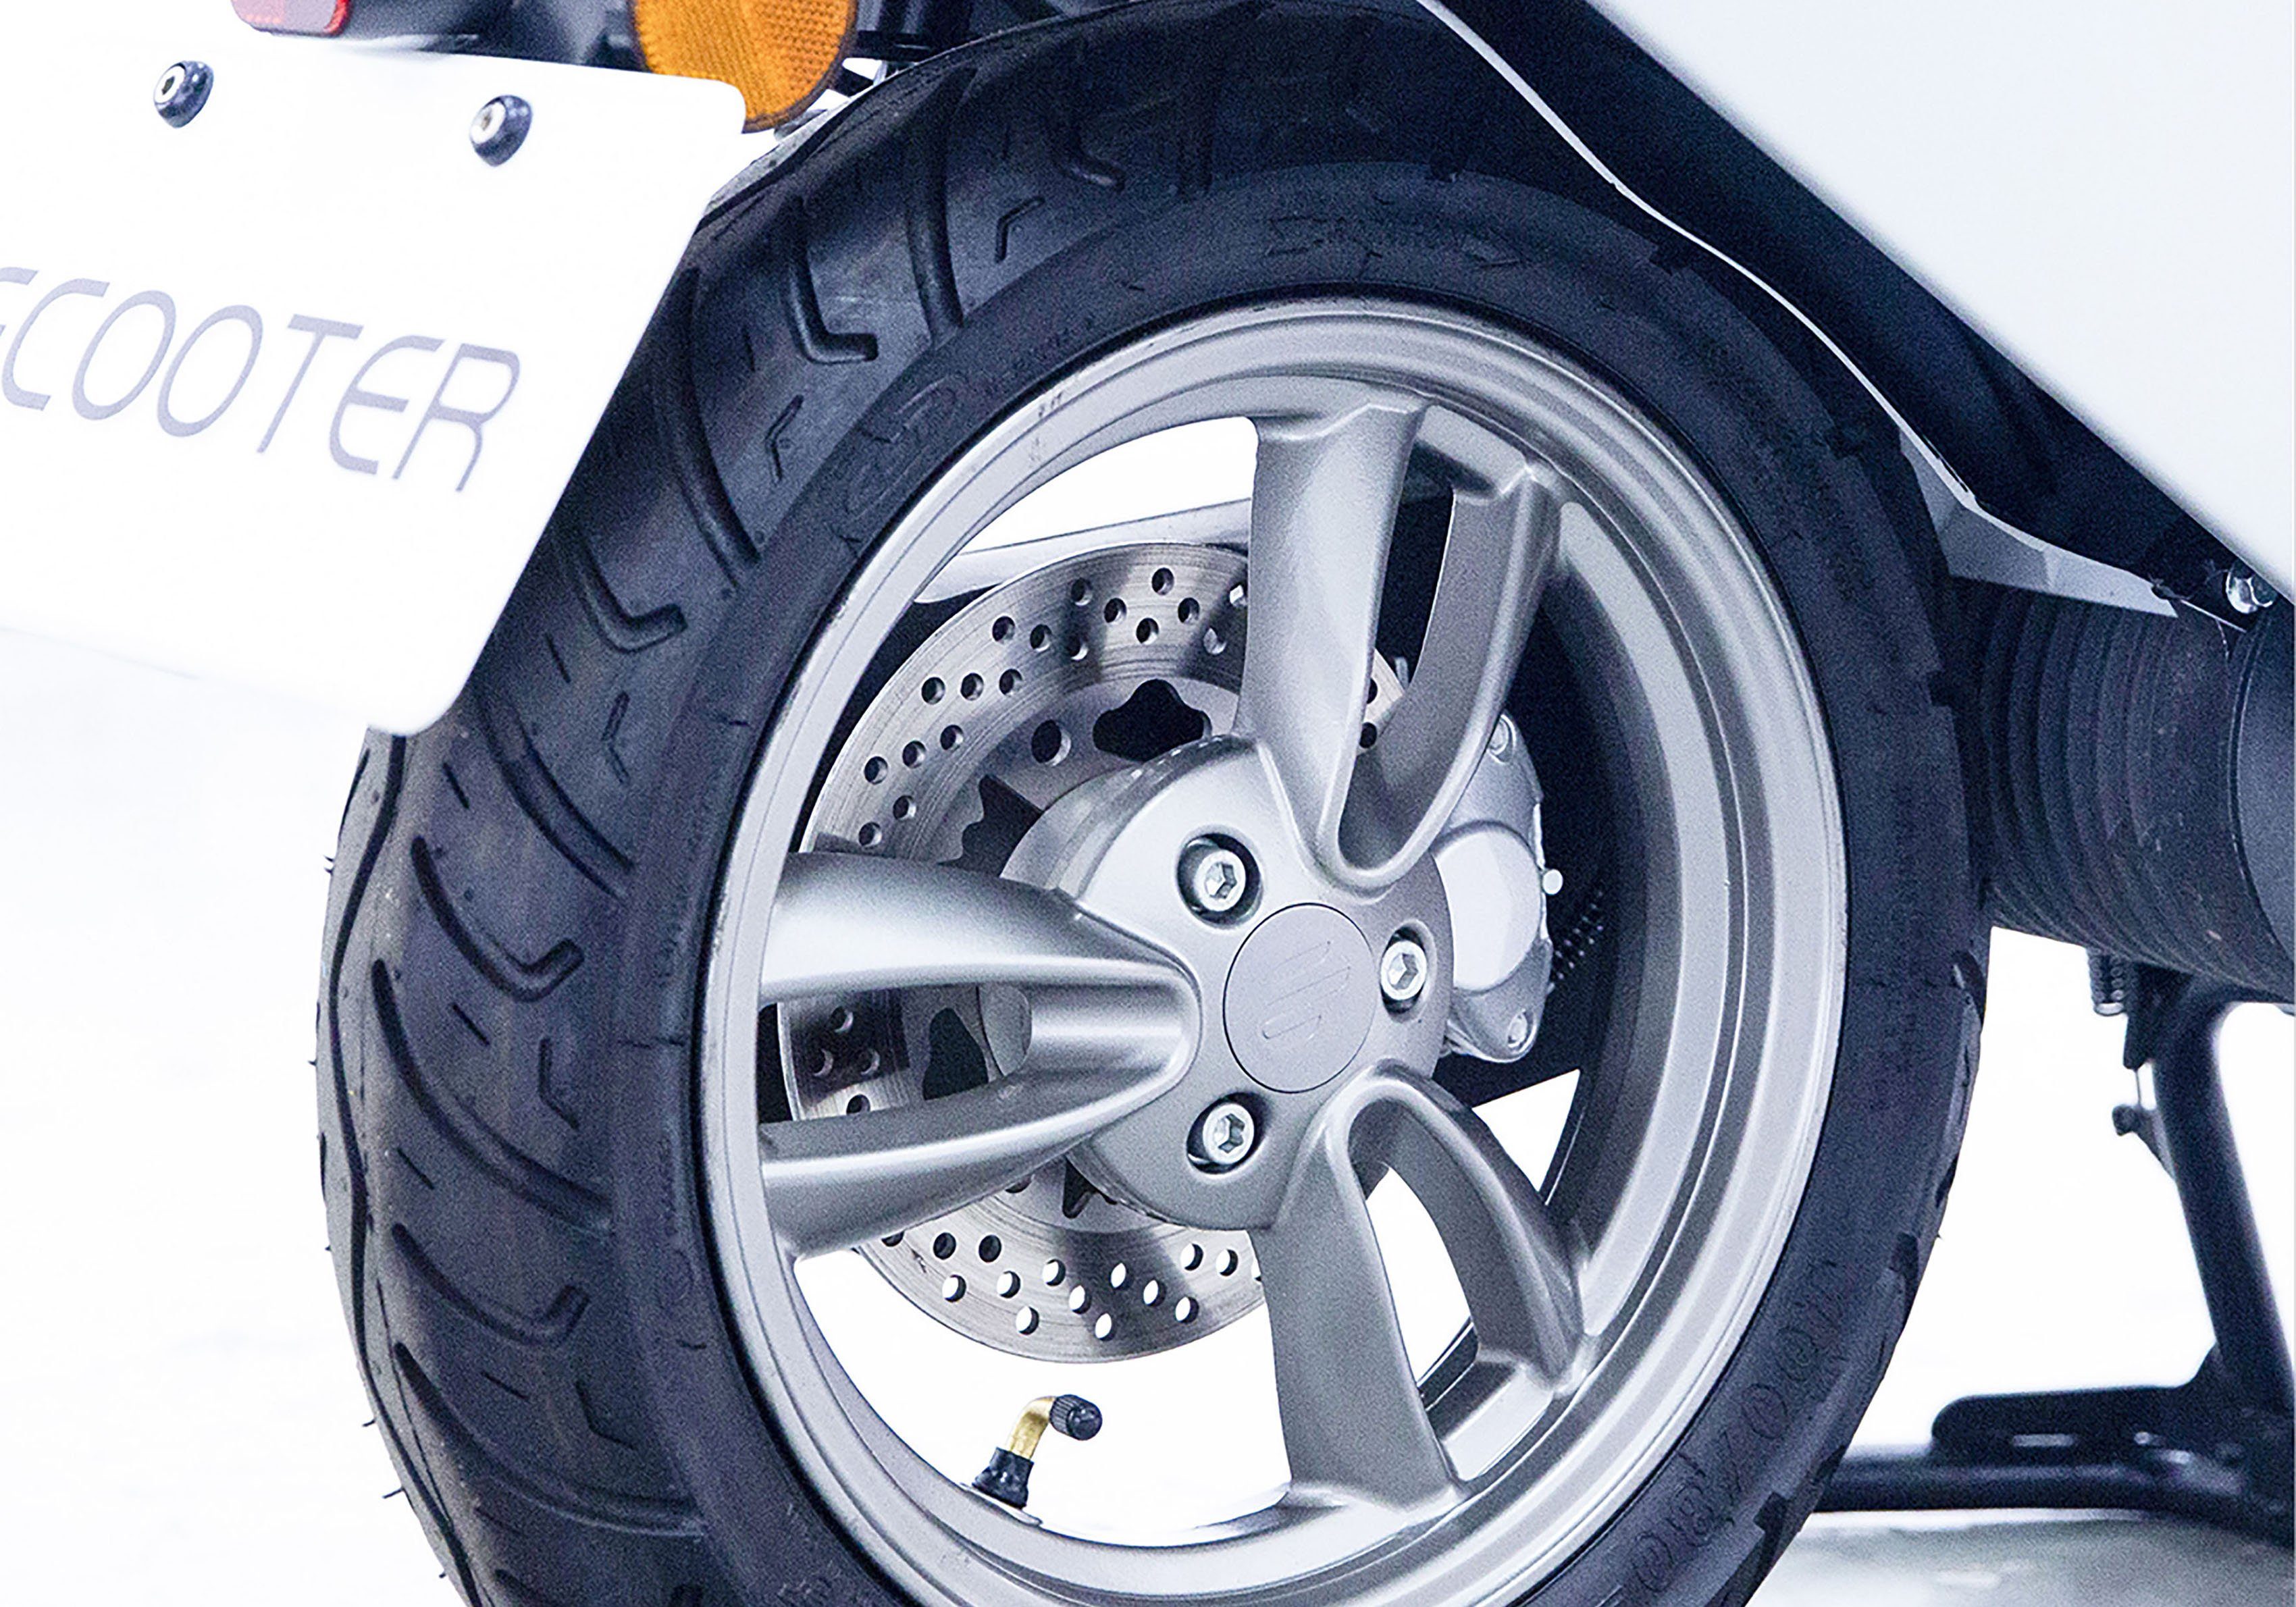 SAXXX E-Motorroller Ecooter E1S, 45 silberfarben km/h